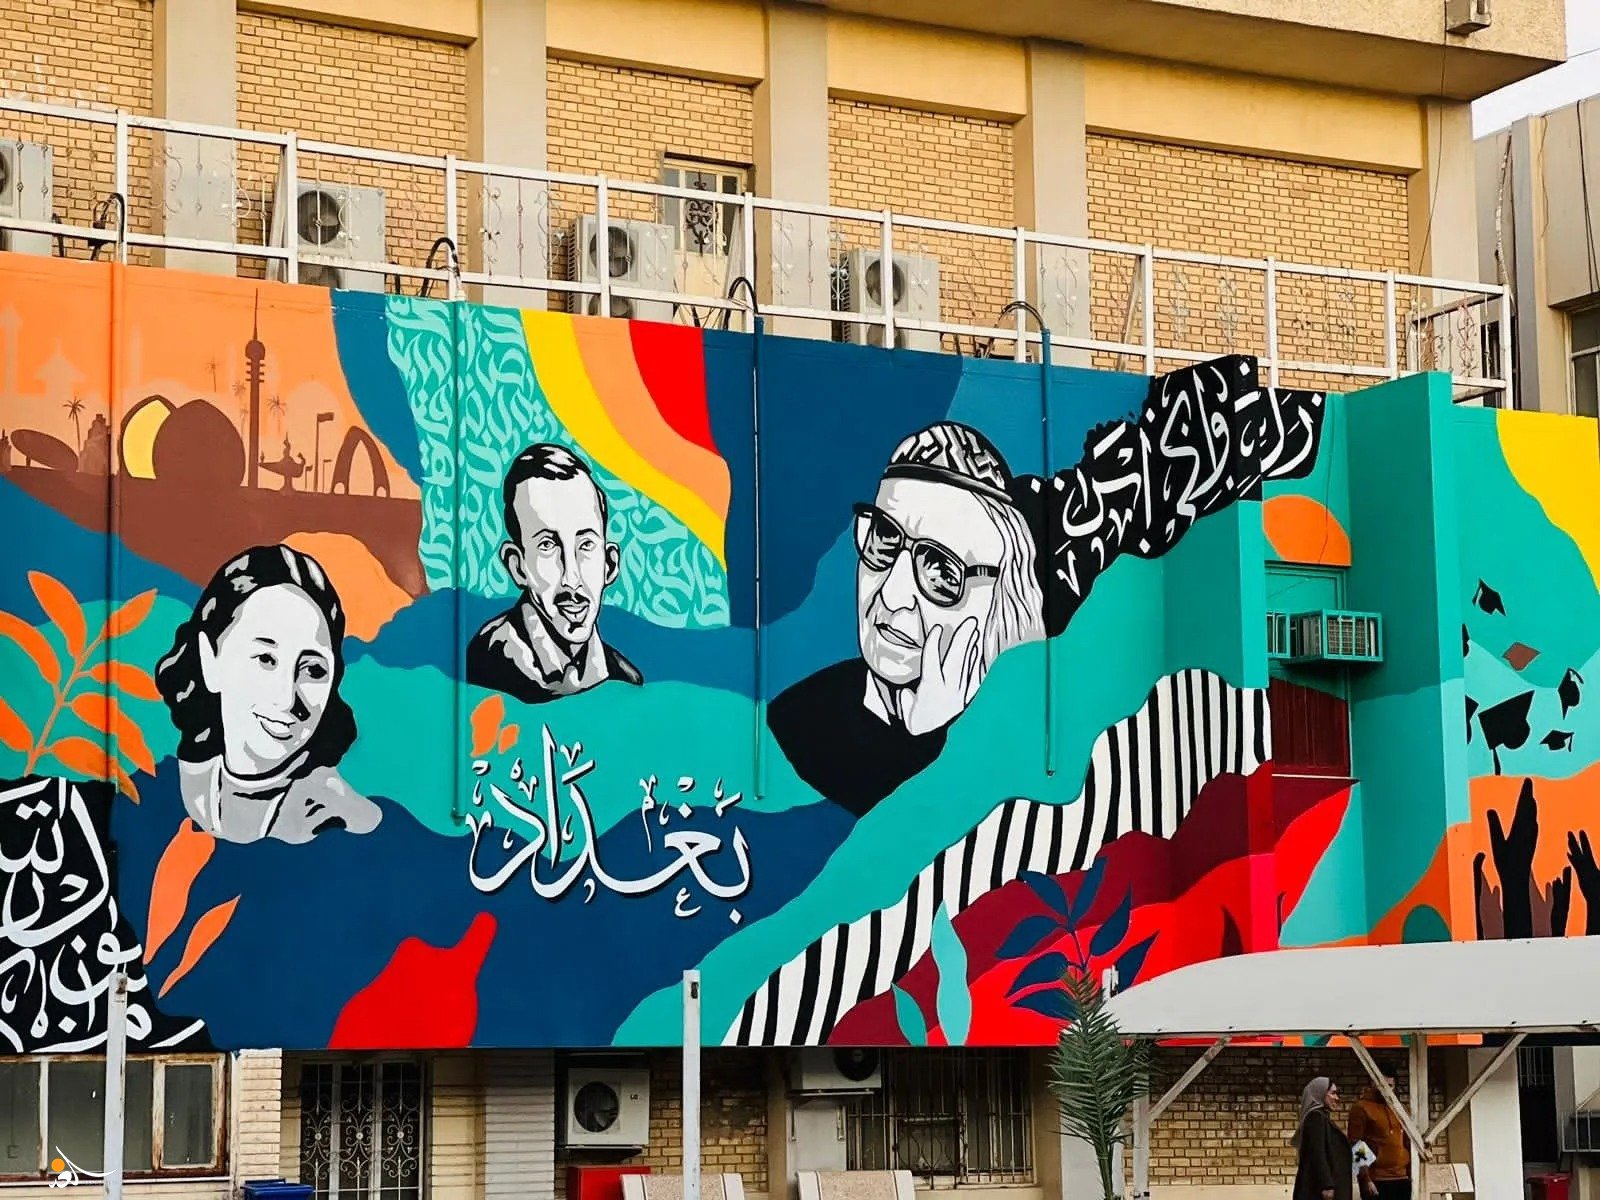 بغداد تحتضن أكبر جدارية فنية على مستوى العراق